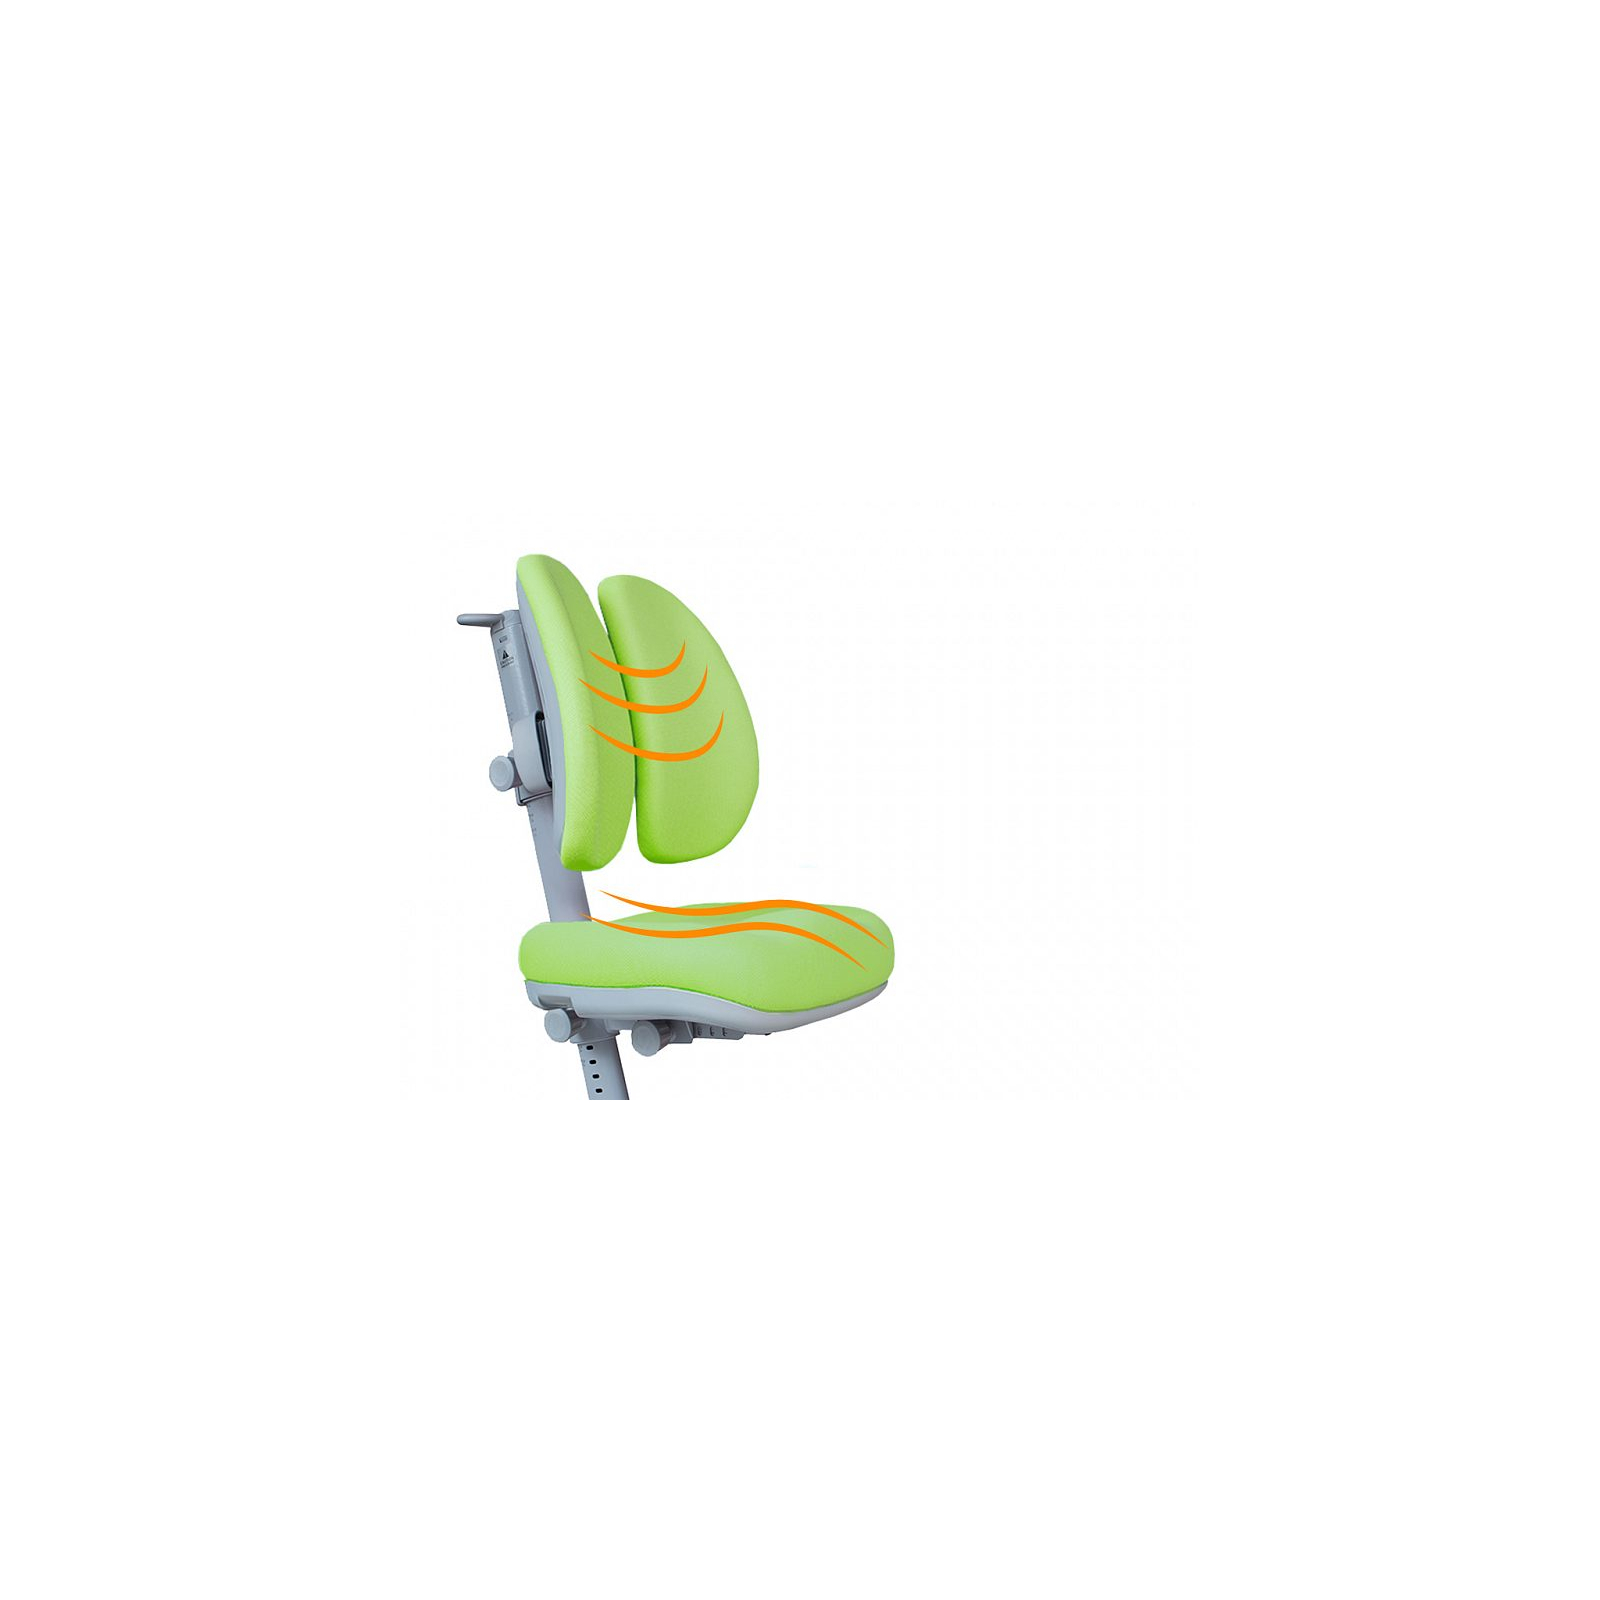 Дитяче крісло Mealux Onyx Duo KS (Y-115 KS) зображення 2